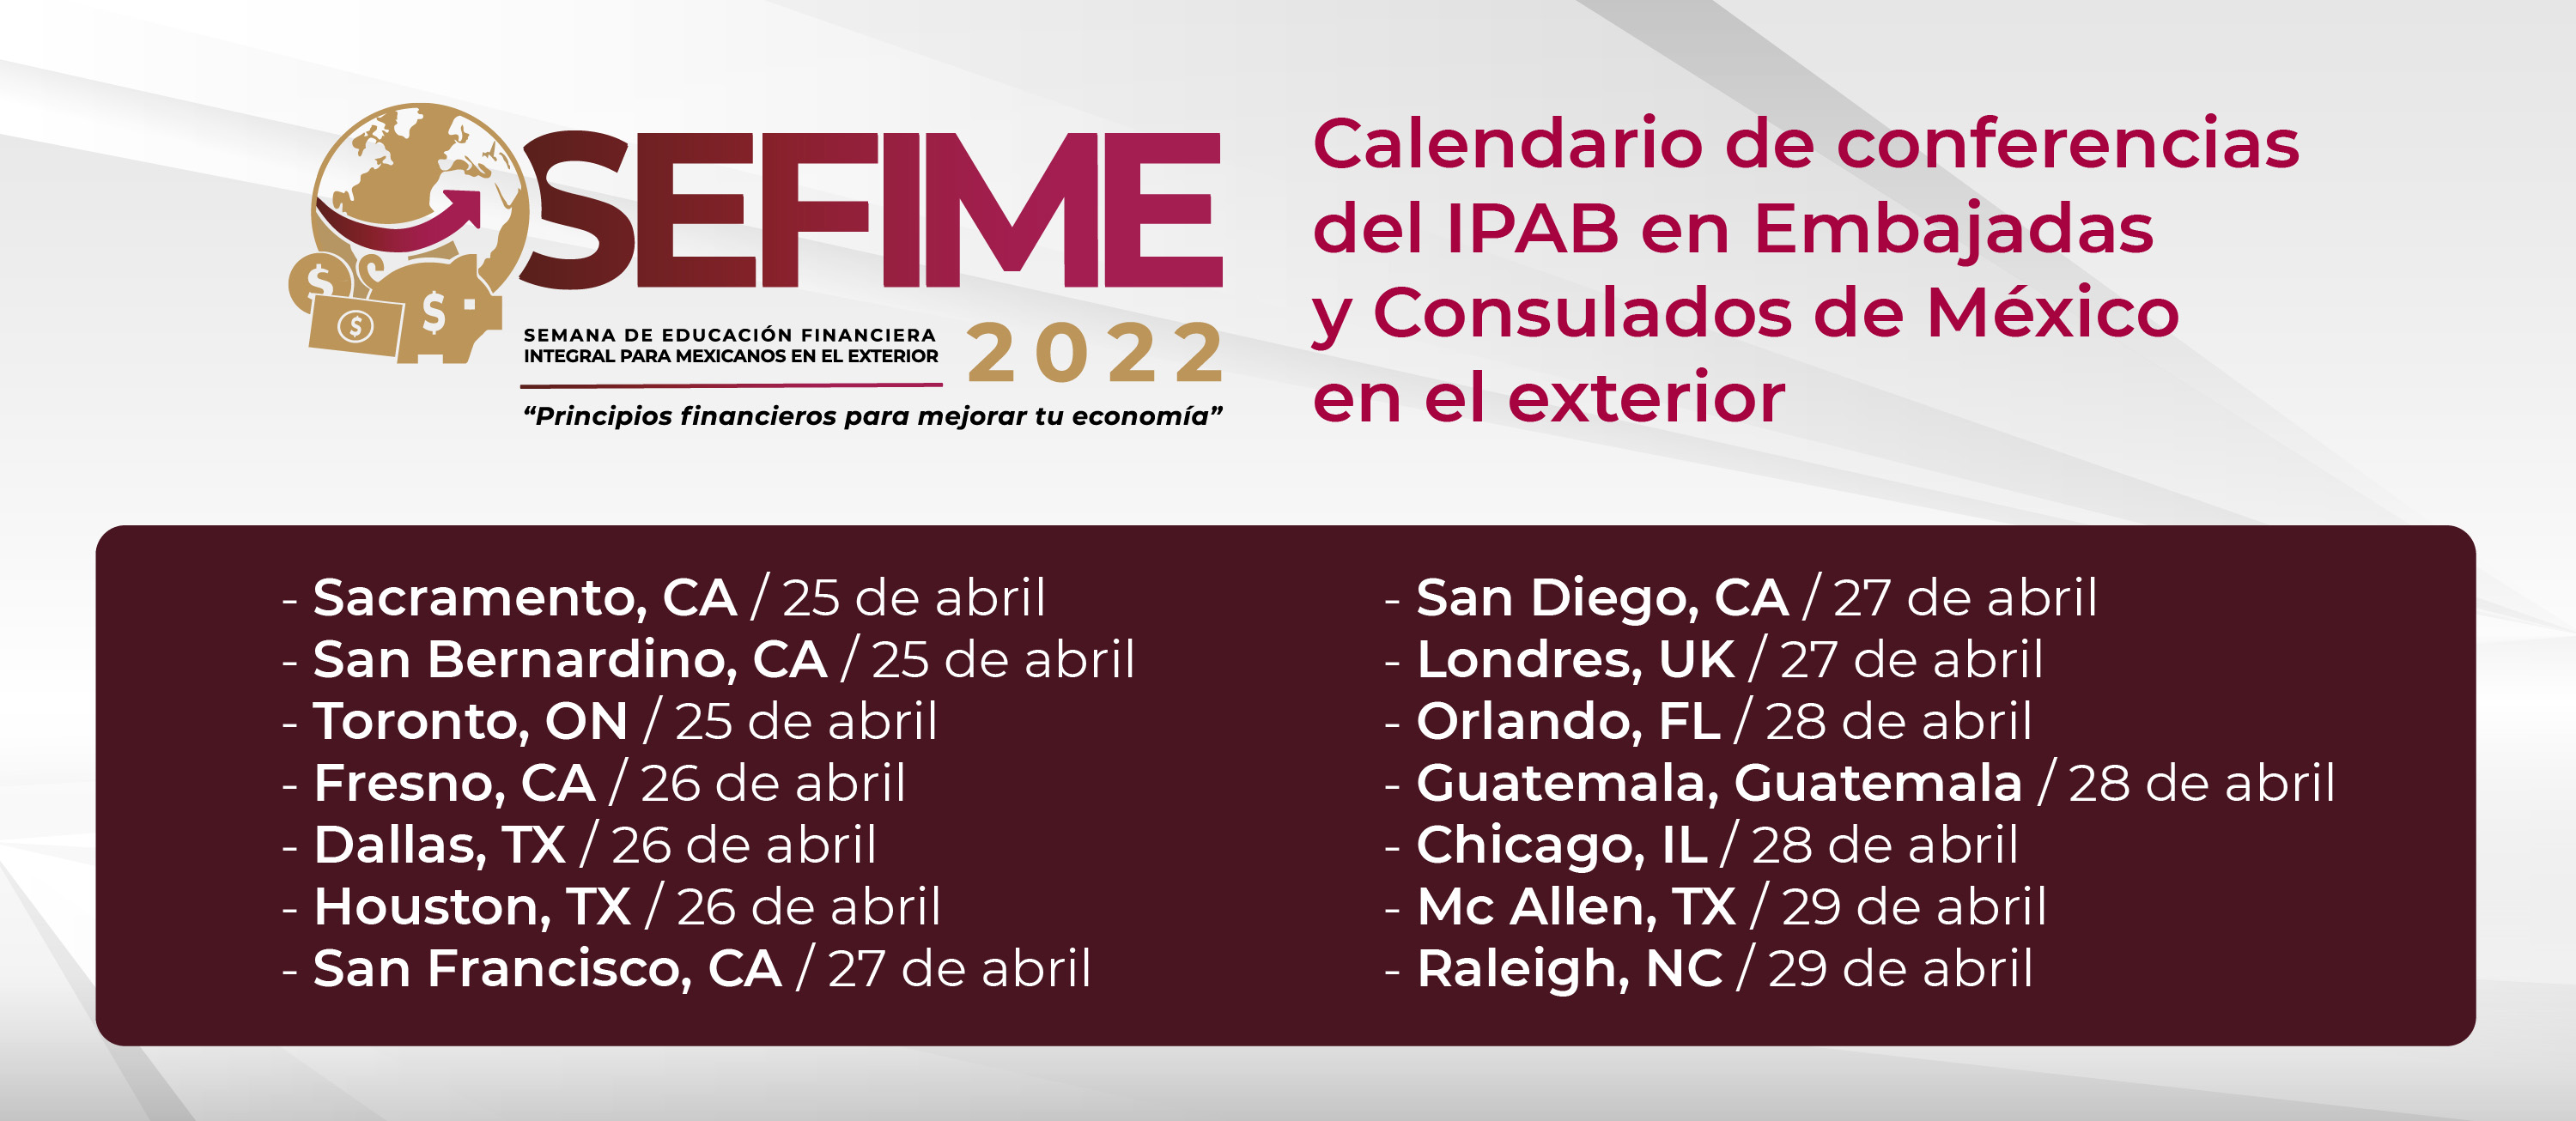 /cms/uploads/image/file/715684/SEFIME-2022_Calendario-de-Conferencias.jpg